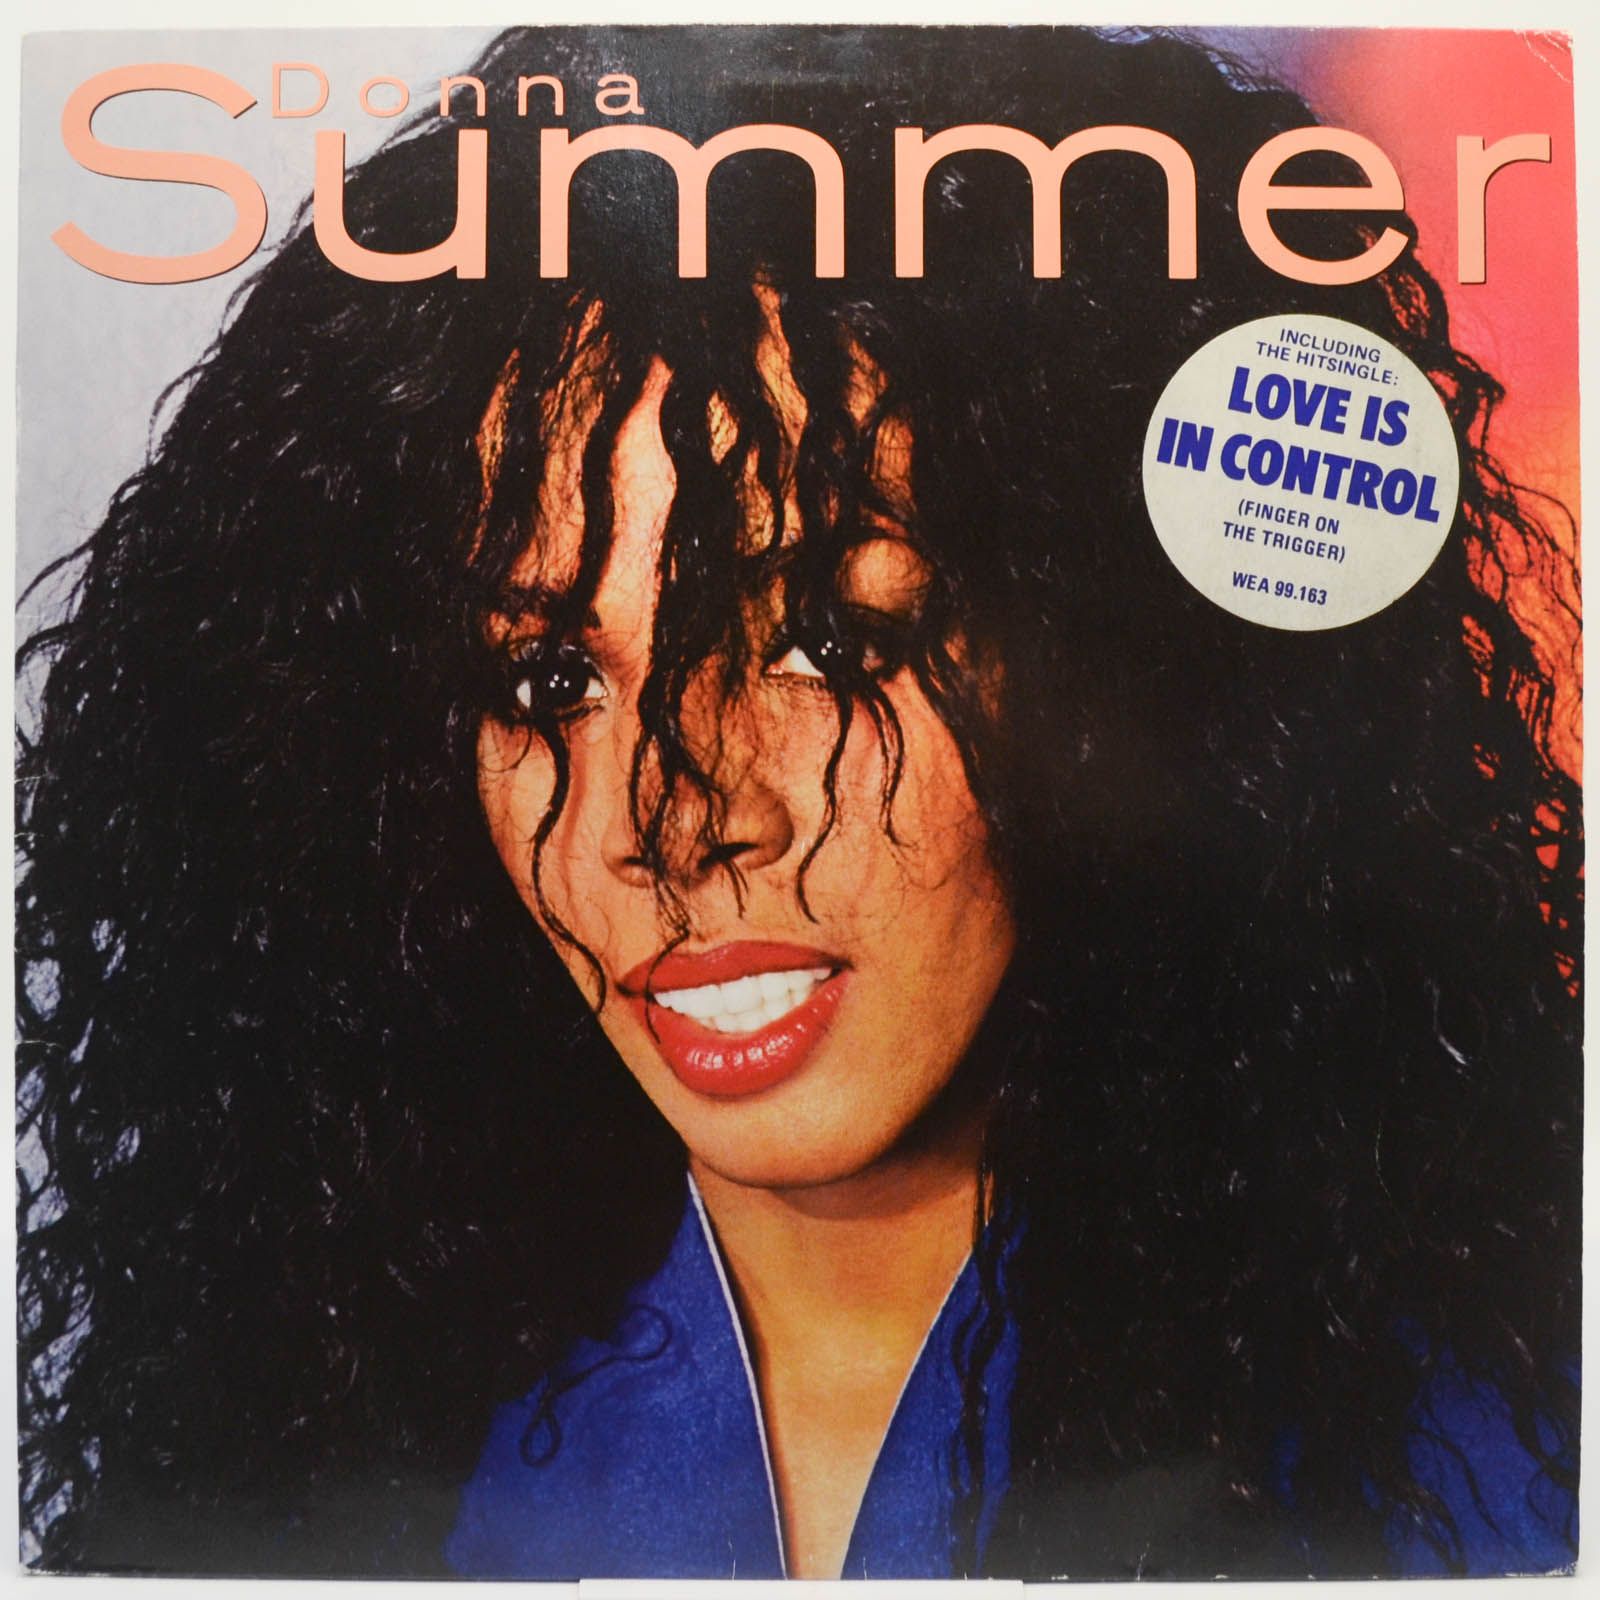 Donna Summer — Donna Summer, 1982